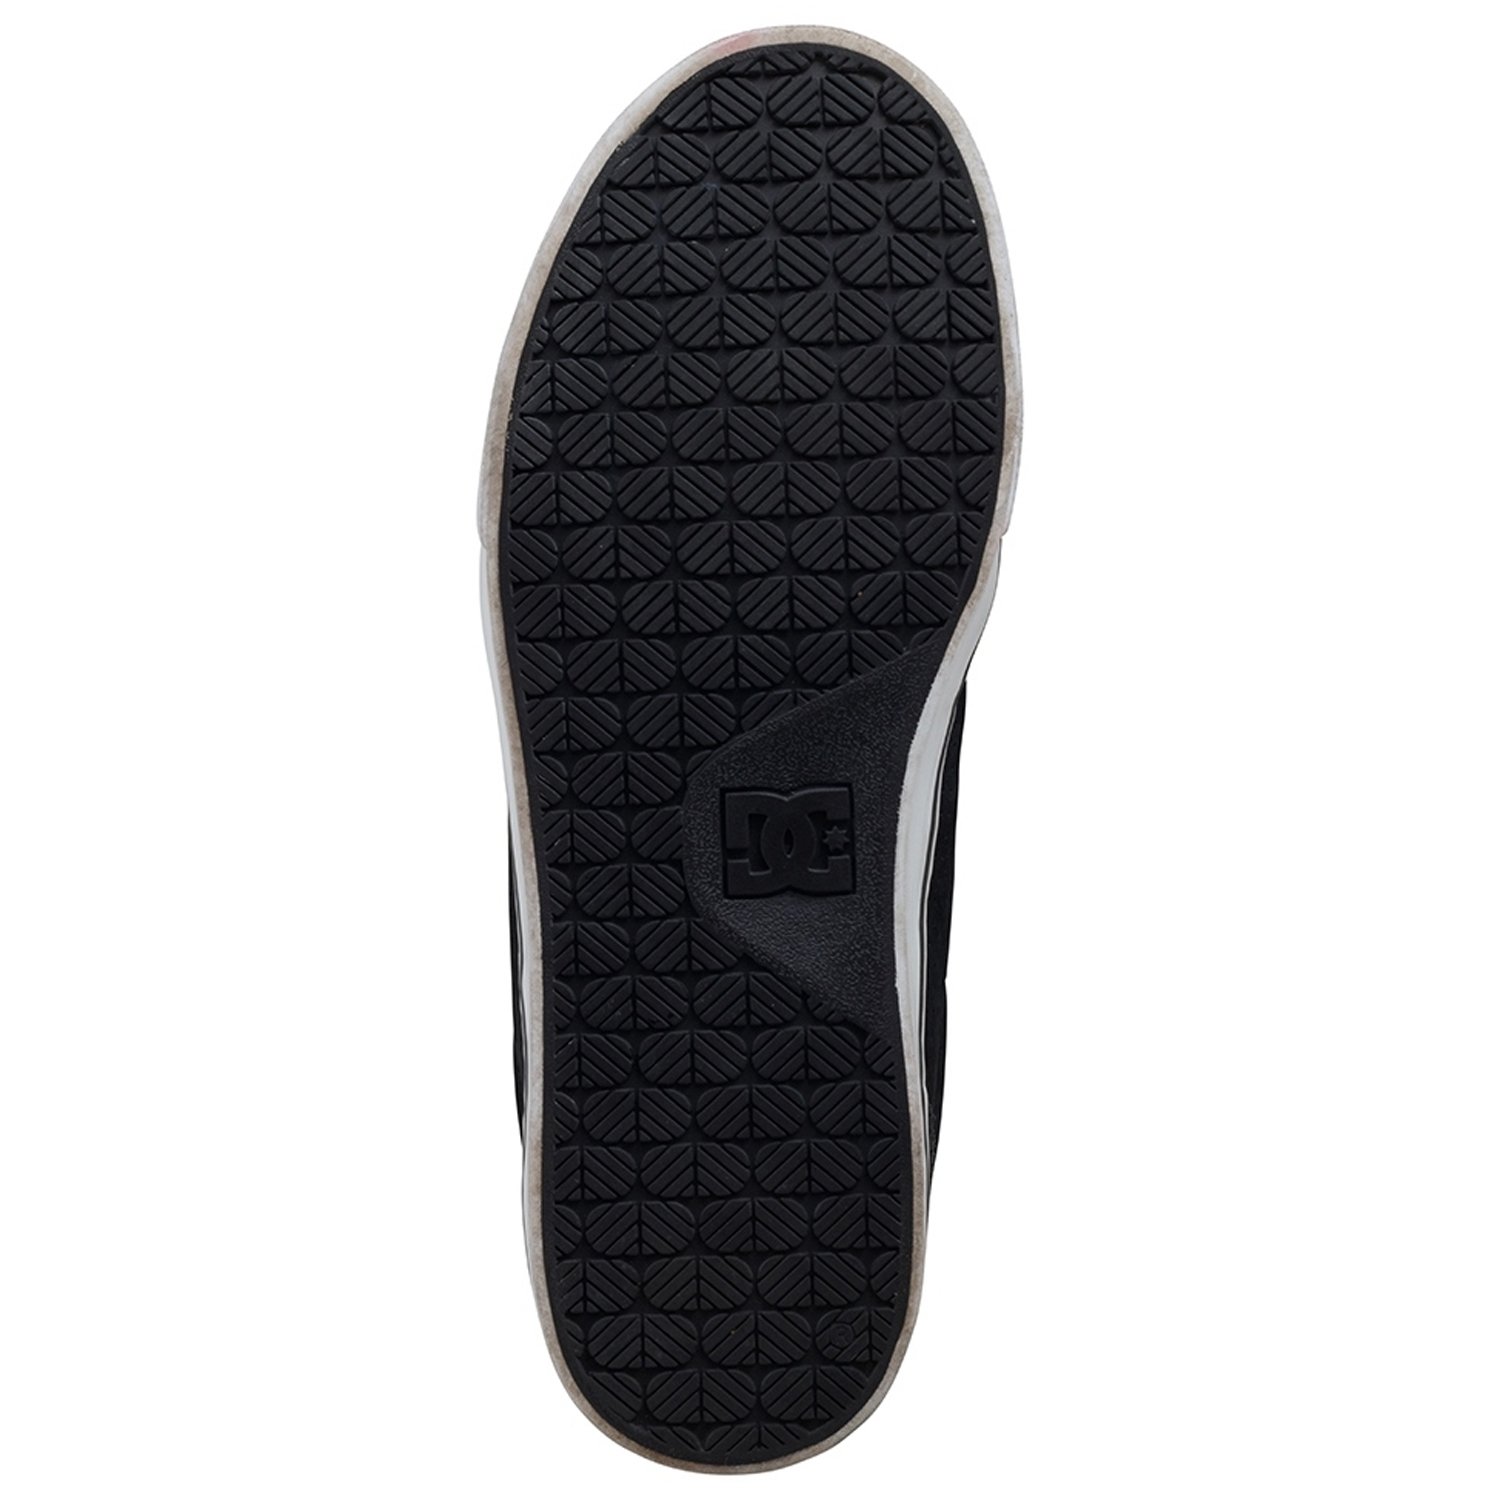 Tênis DC Shoes Anvil LA SE Masculino - Preto e Branco Preto 4